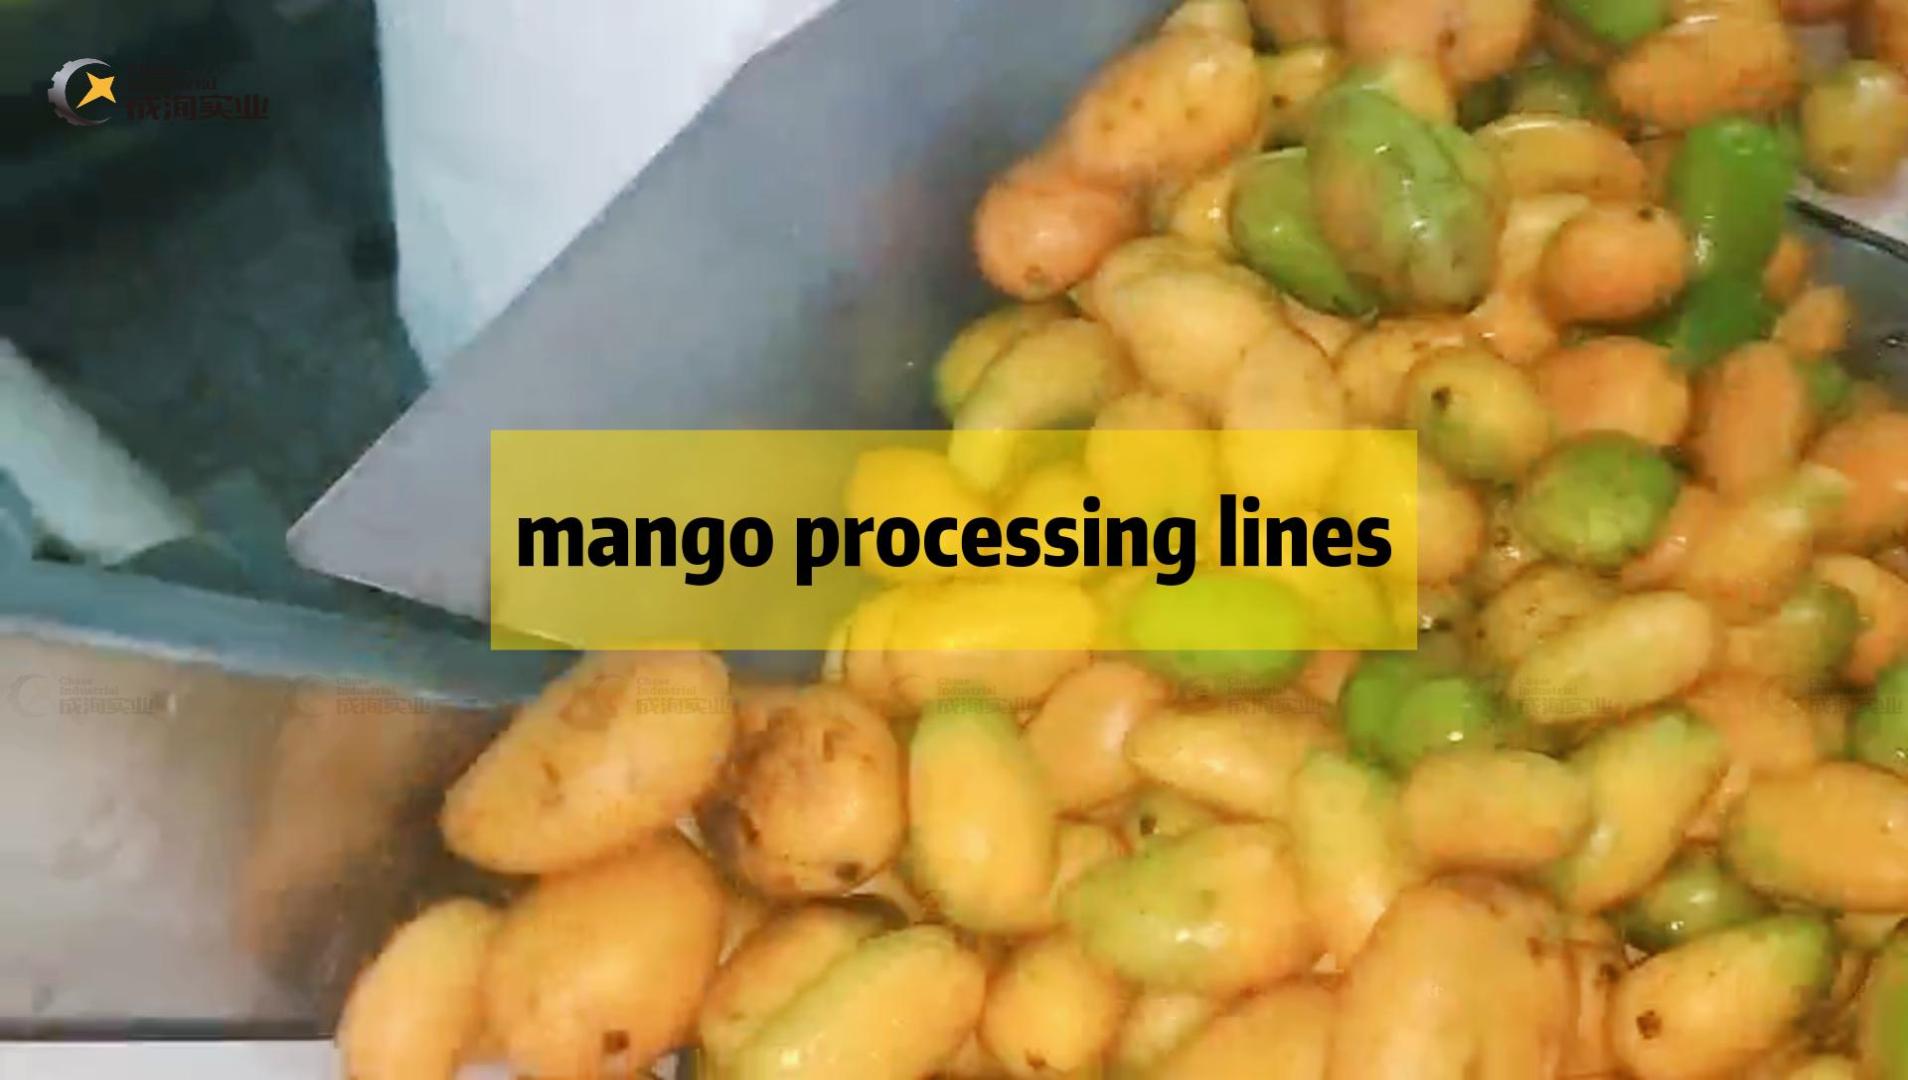 Mango pulp production line